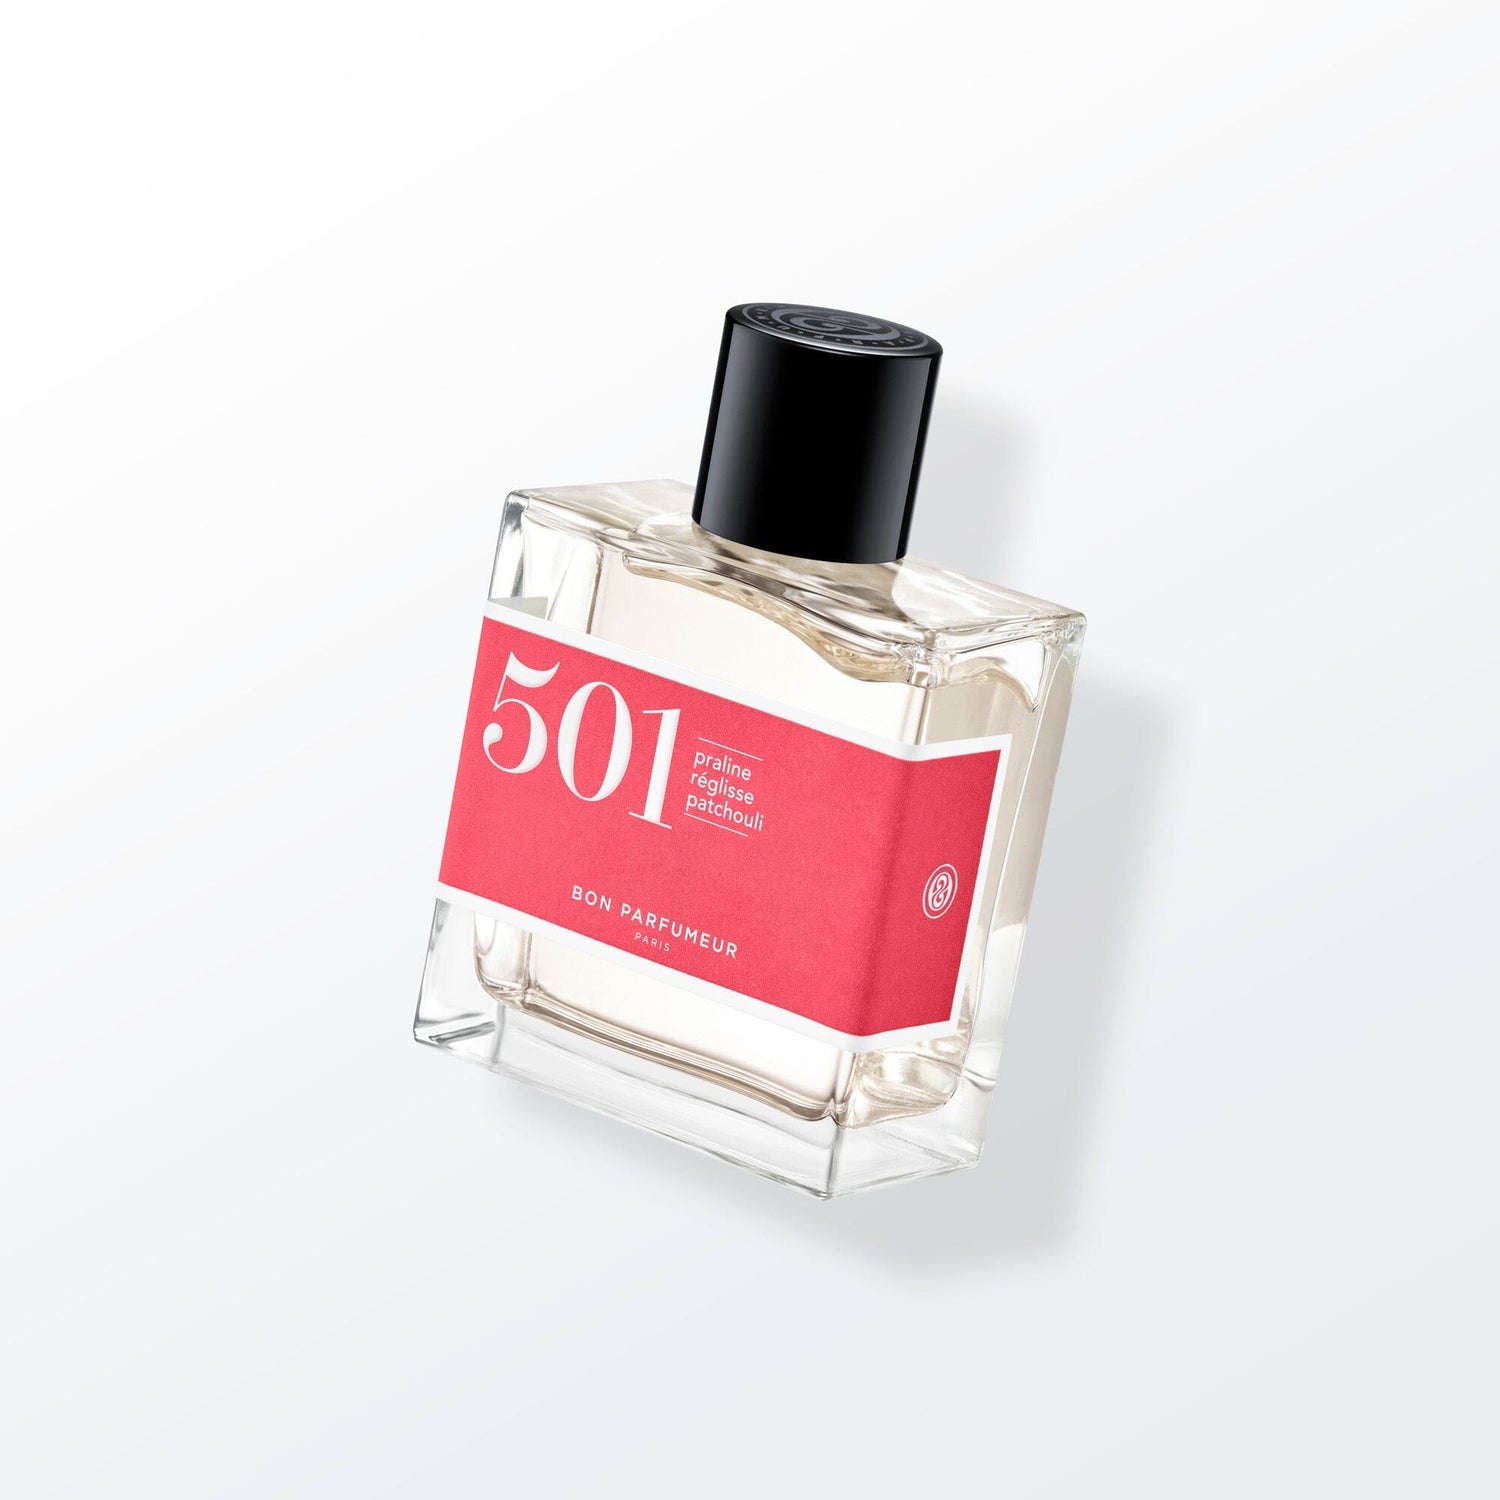 500 - Gourmand Fragrances